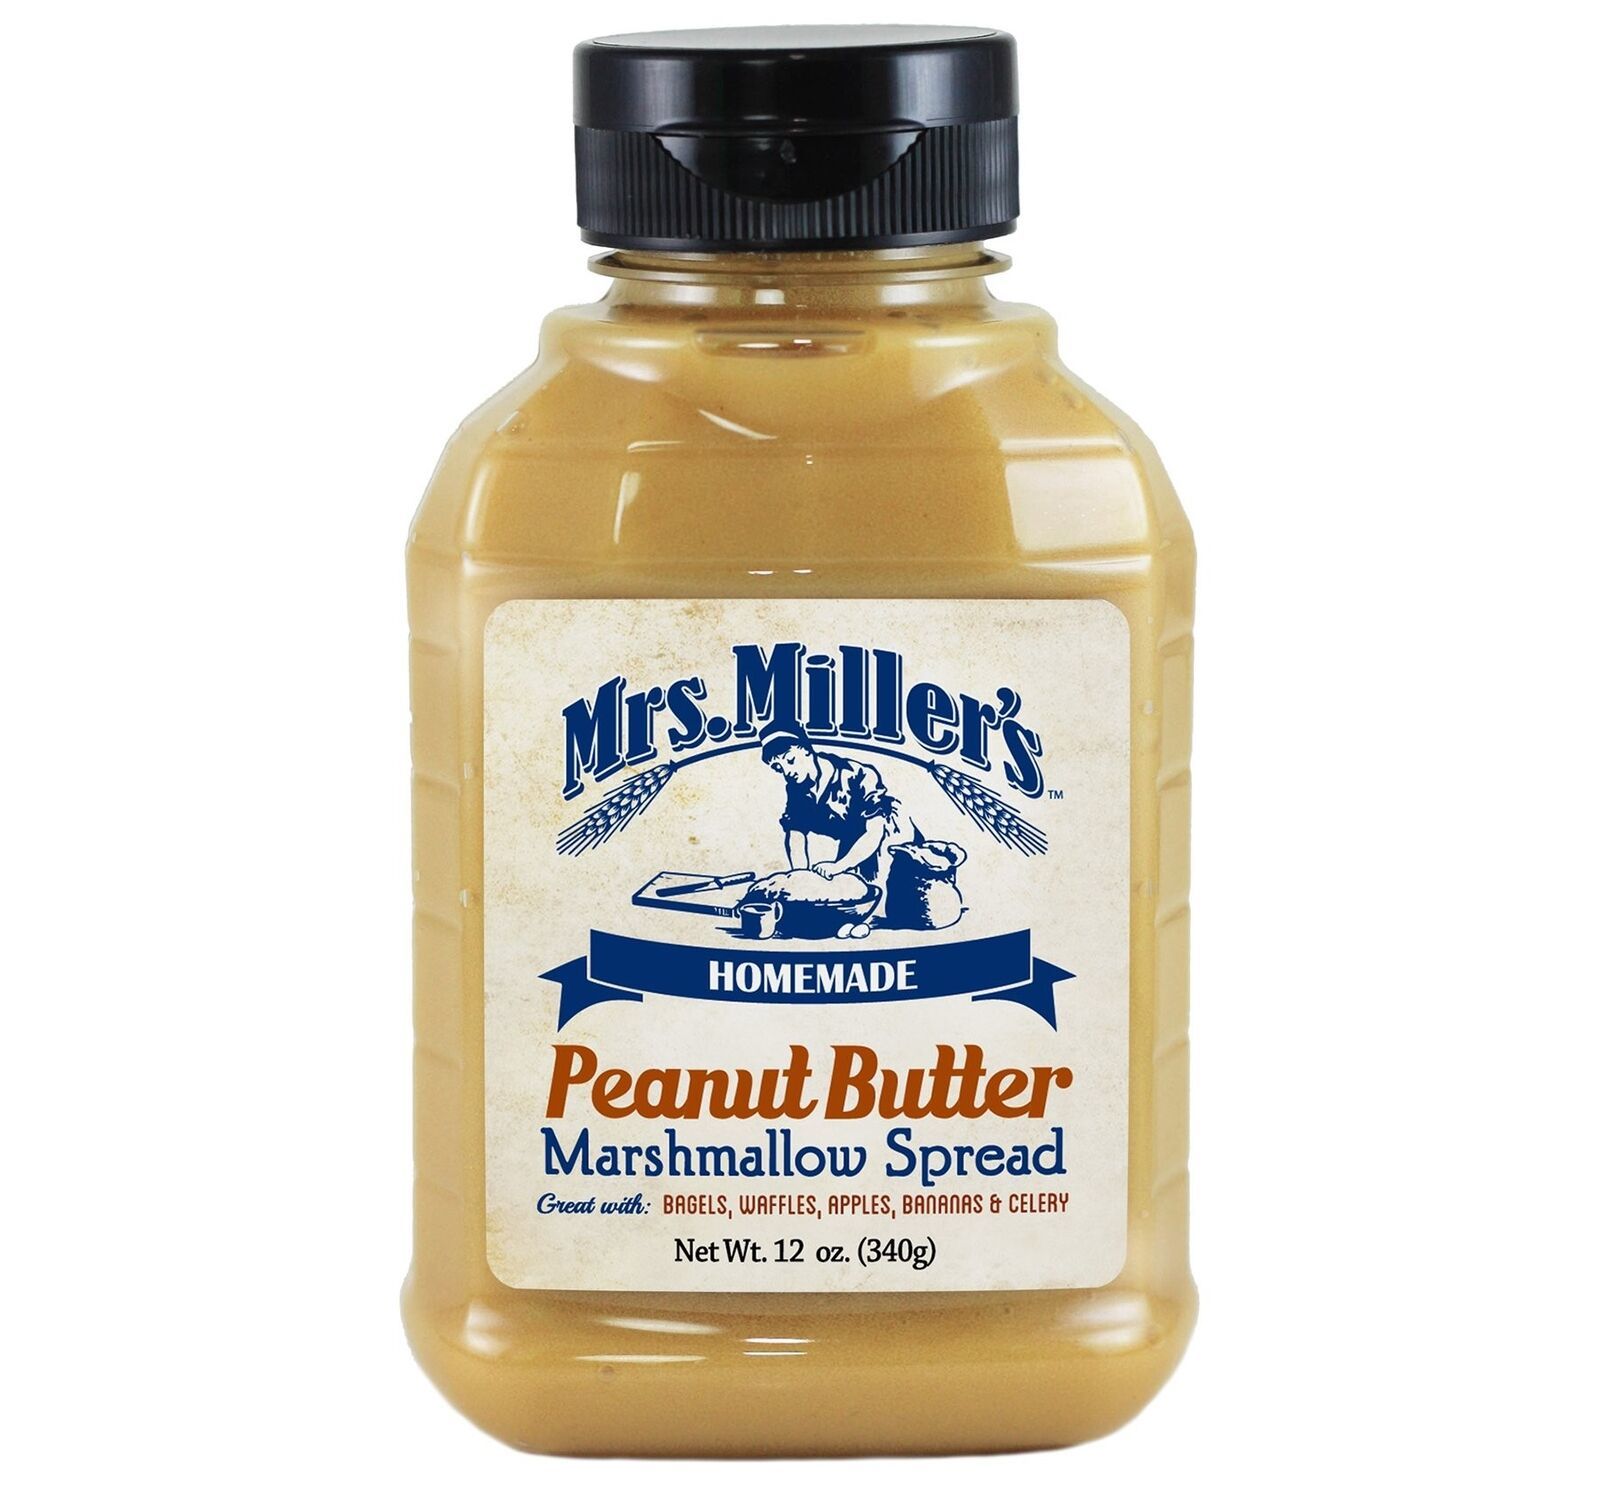 Primary image for Mrs. Miller's Homemade Peanut Butter Marshmallow Spread, 2-Pack 12 oz. Bottles